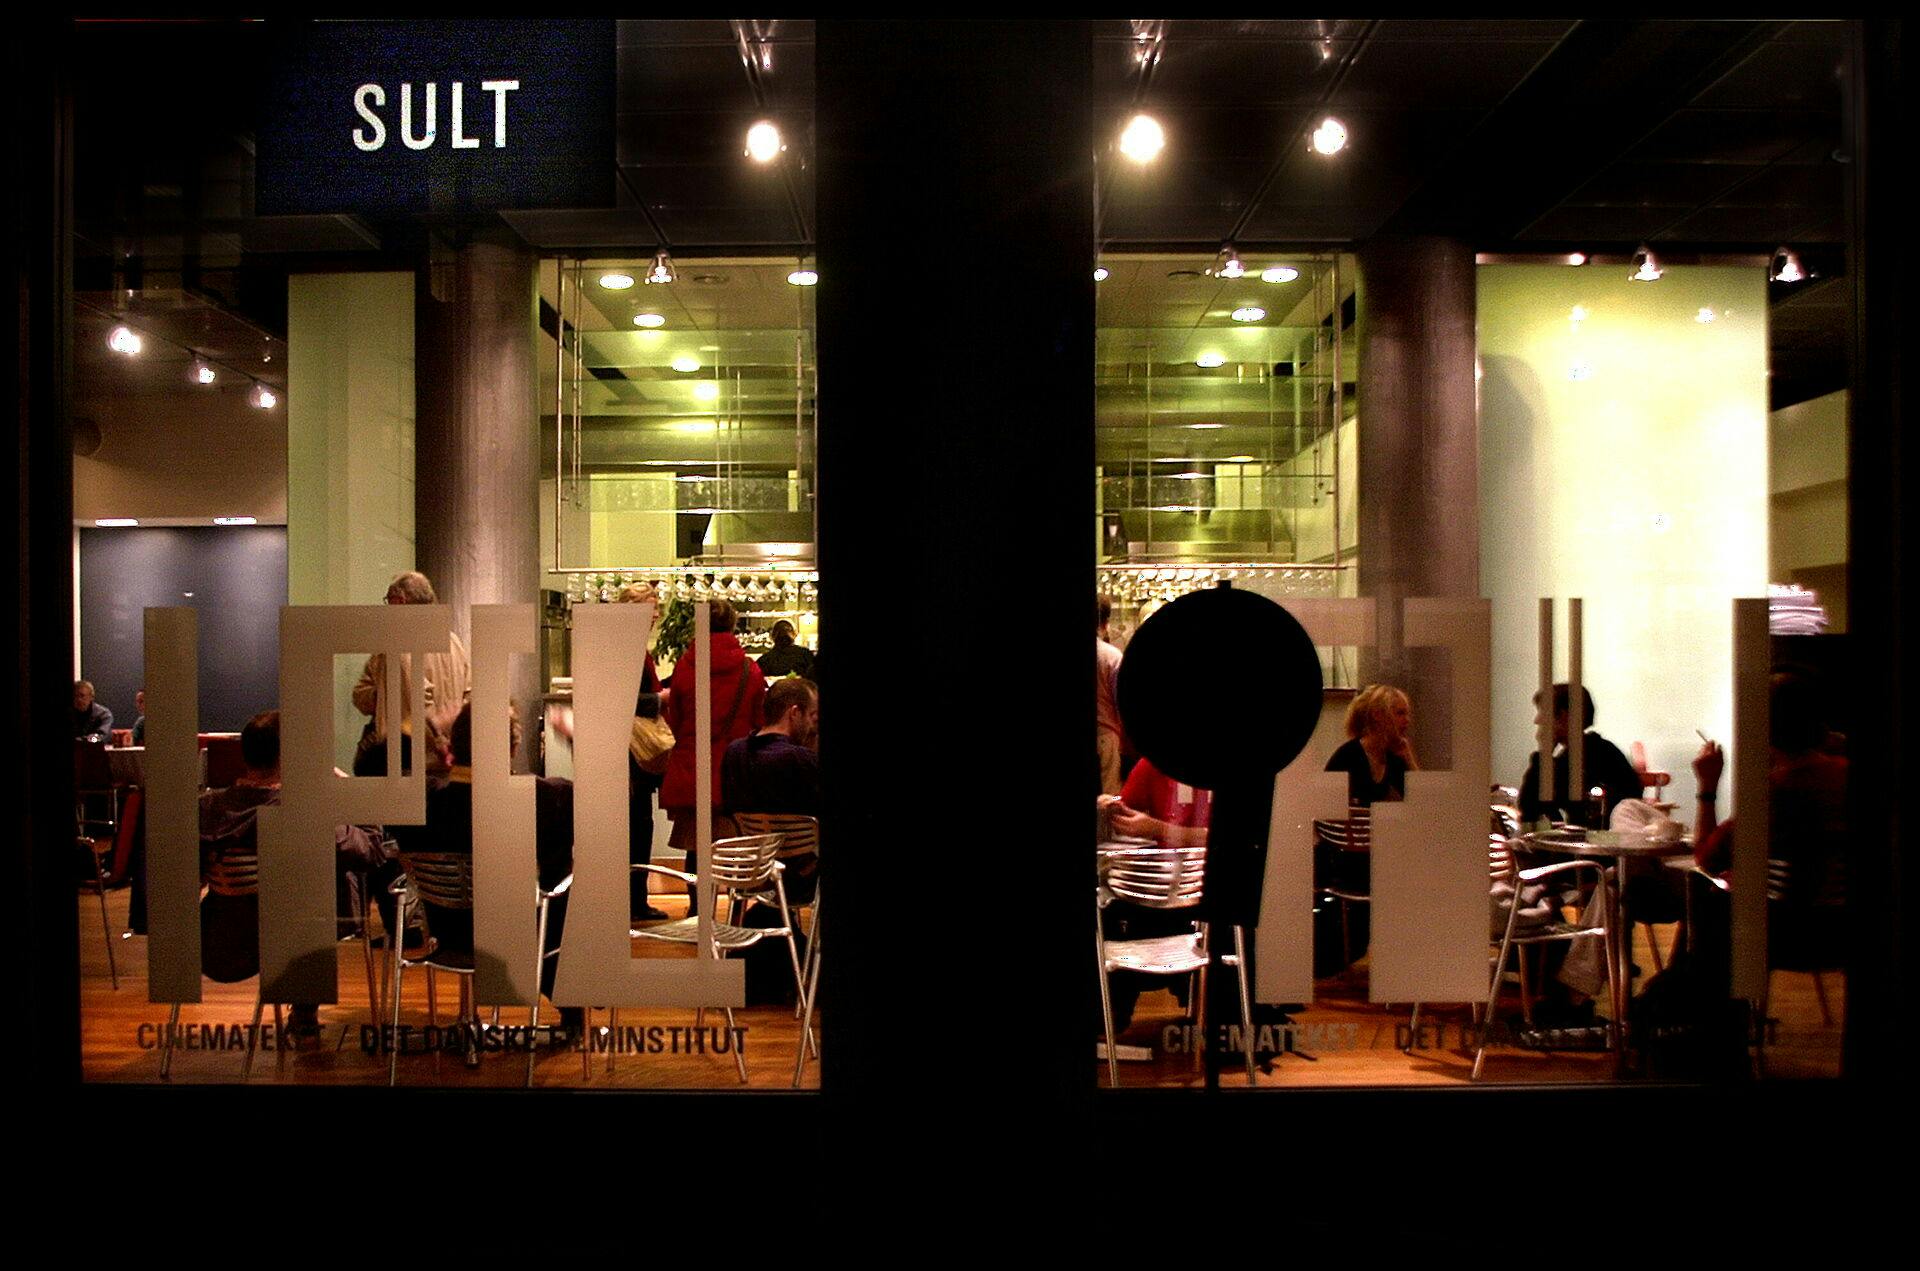 Restaurant SULT ligger i Vognmagergade 8B i København.
